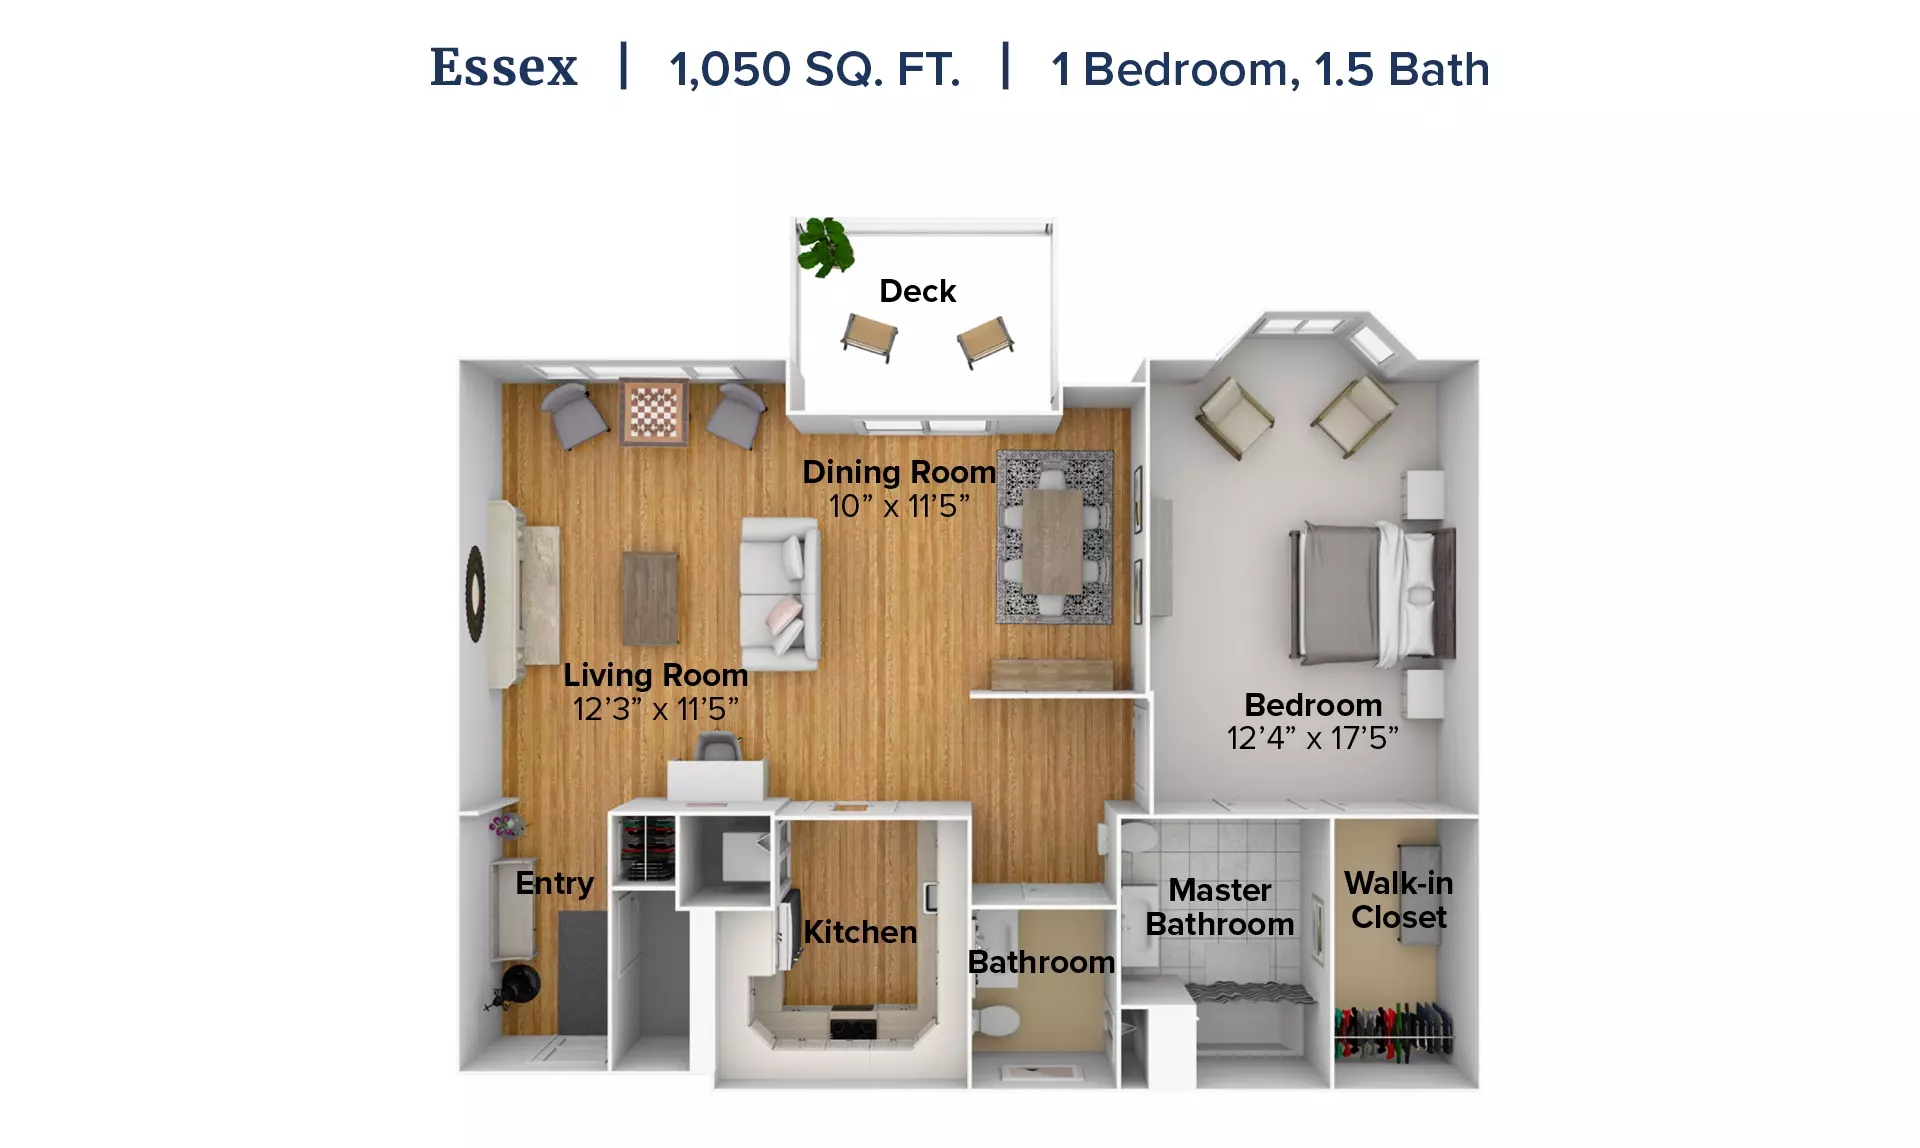 Essex apartment floor plan